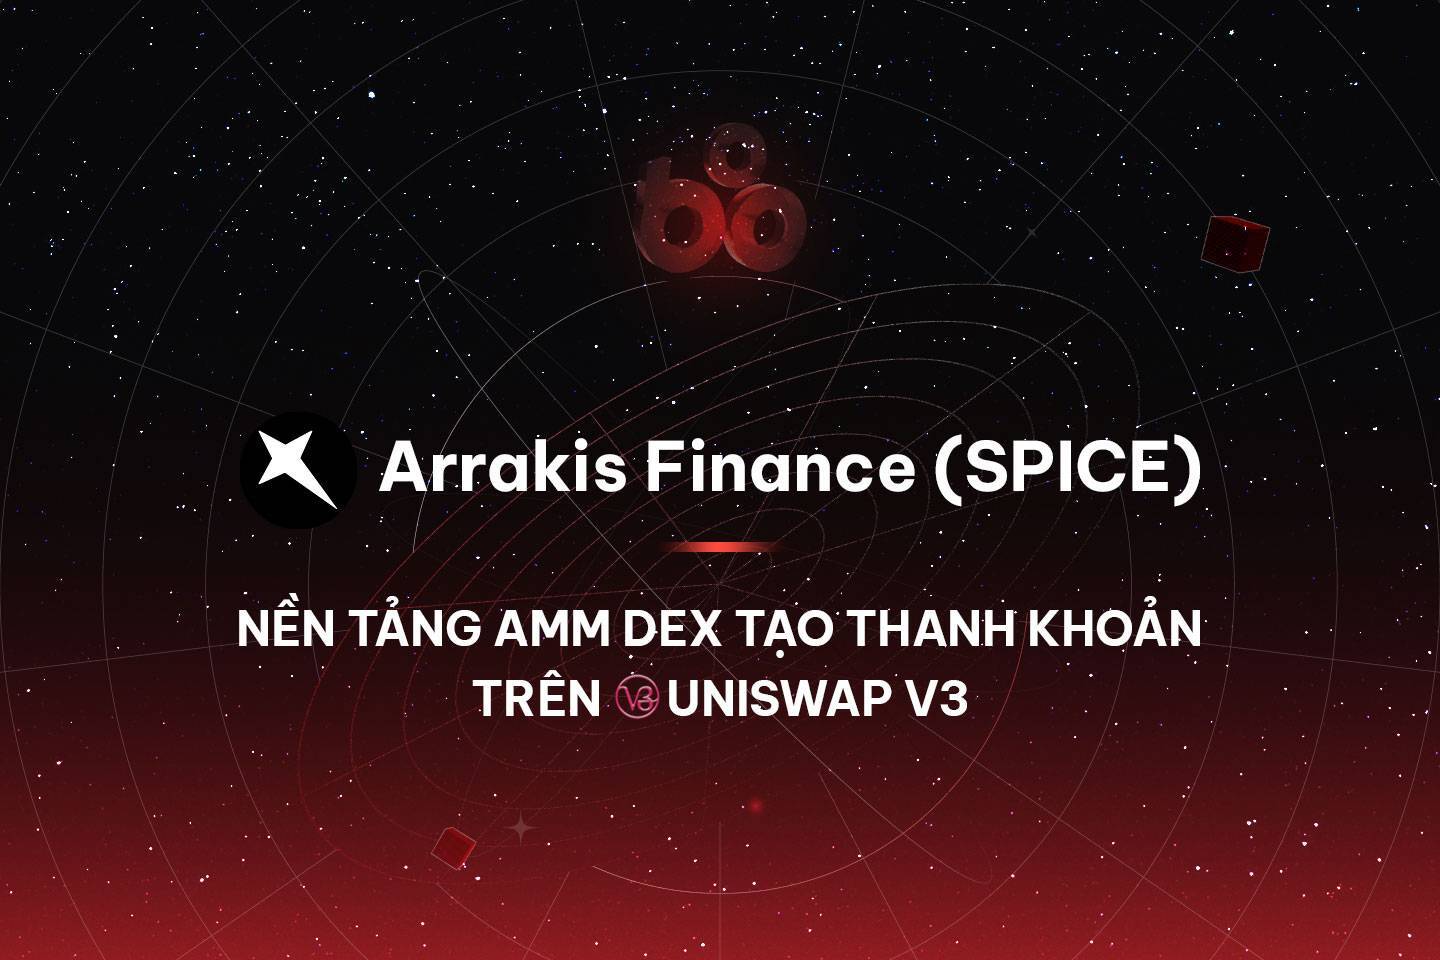 Arrakis Finance spice - Nền Tảng Amm Dex Tạo Thanh Khoản Trên Uniswap V3